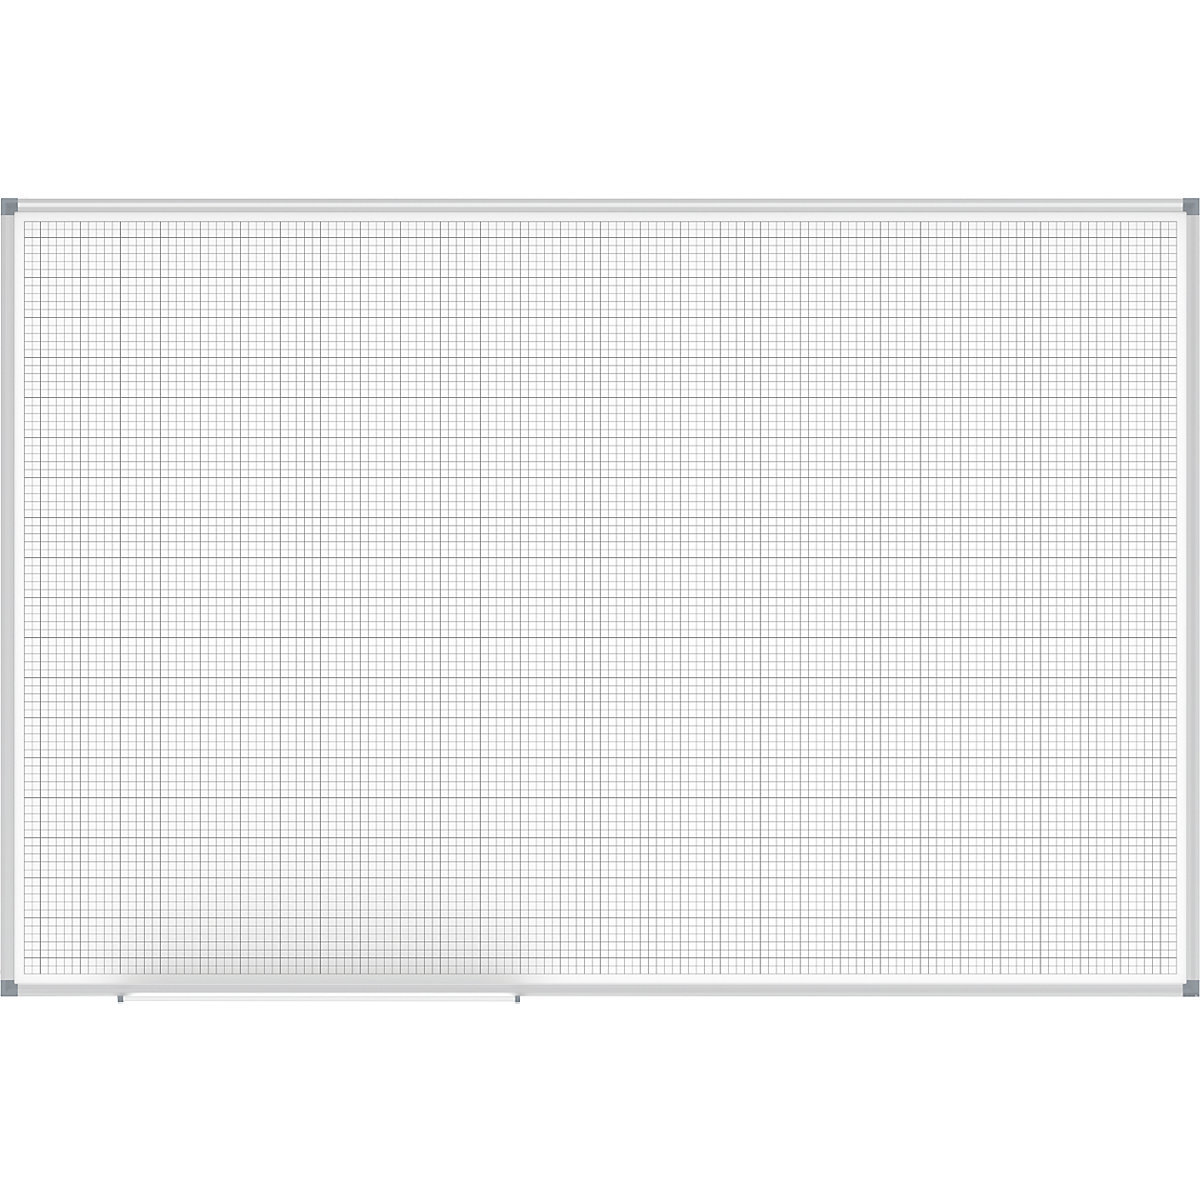 Rasterbord MAULstandard, wit – MAUL, raster 10 x 10 / 50 x 50 mm, b x h = 1500 x 1000 mm-4